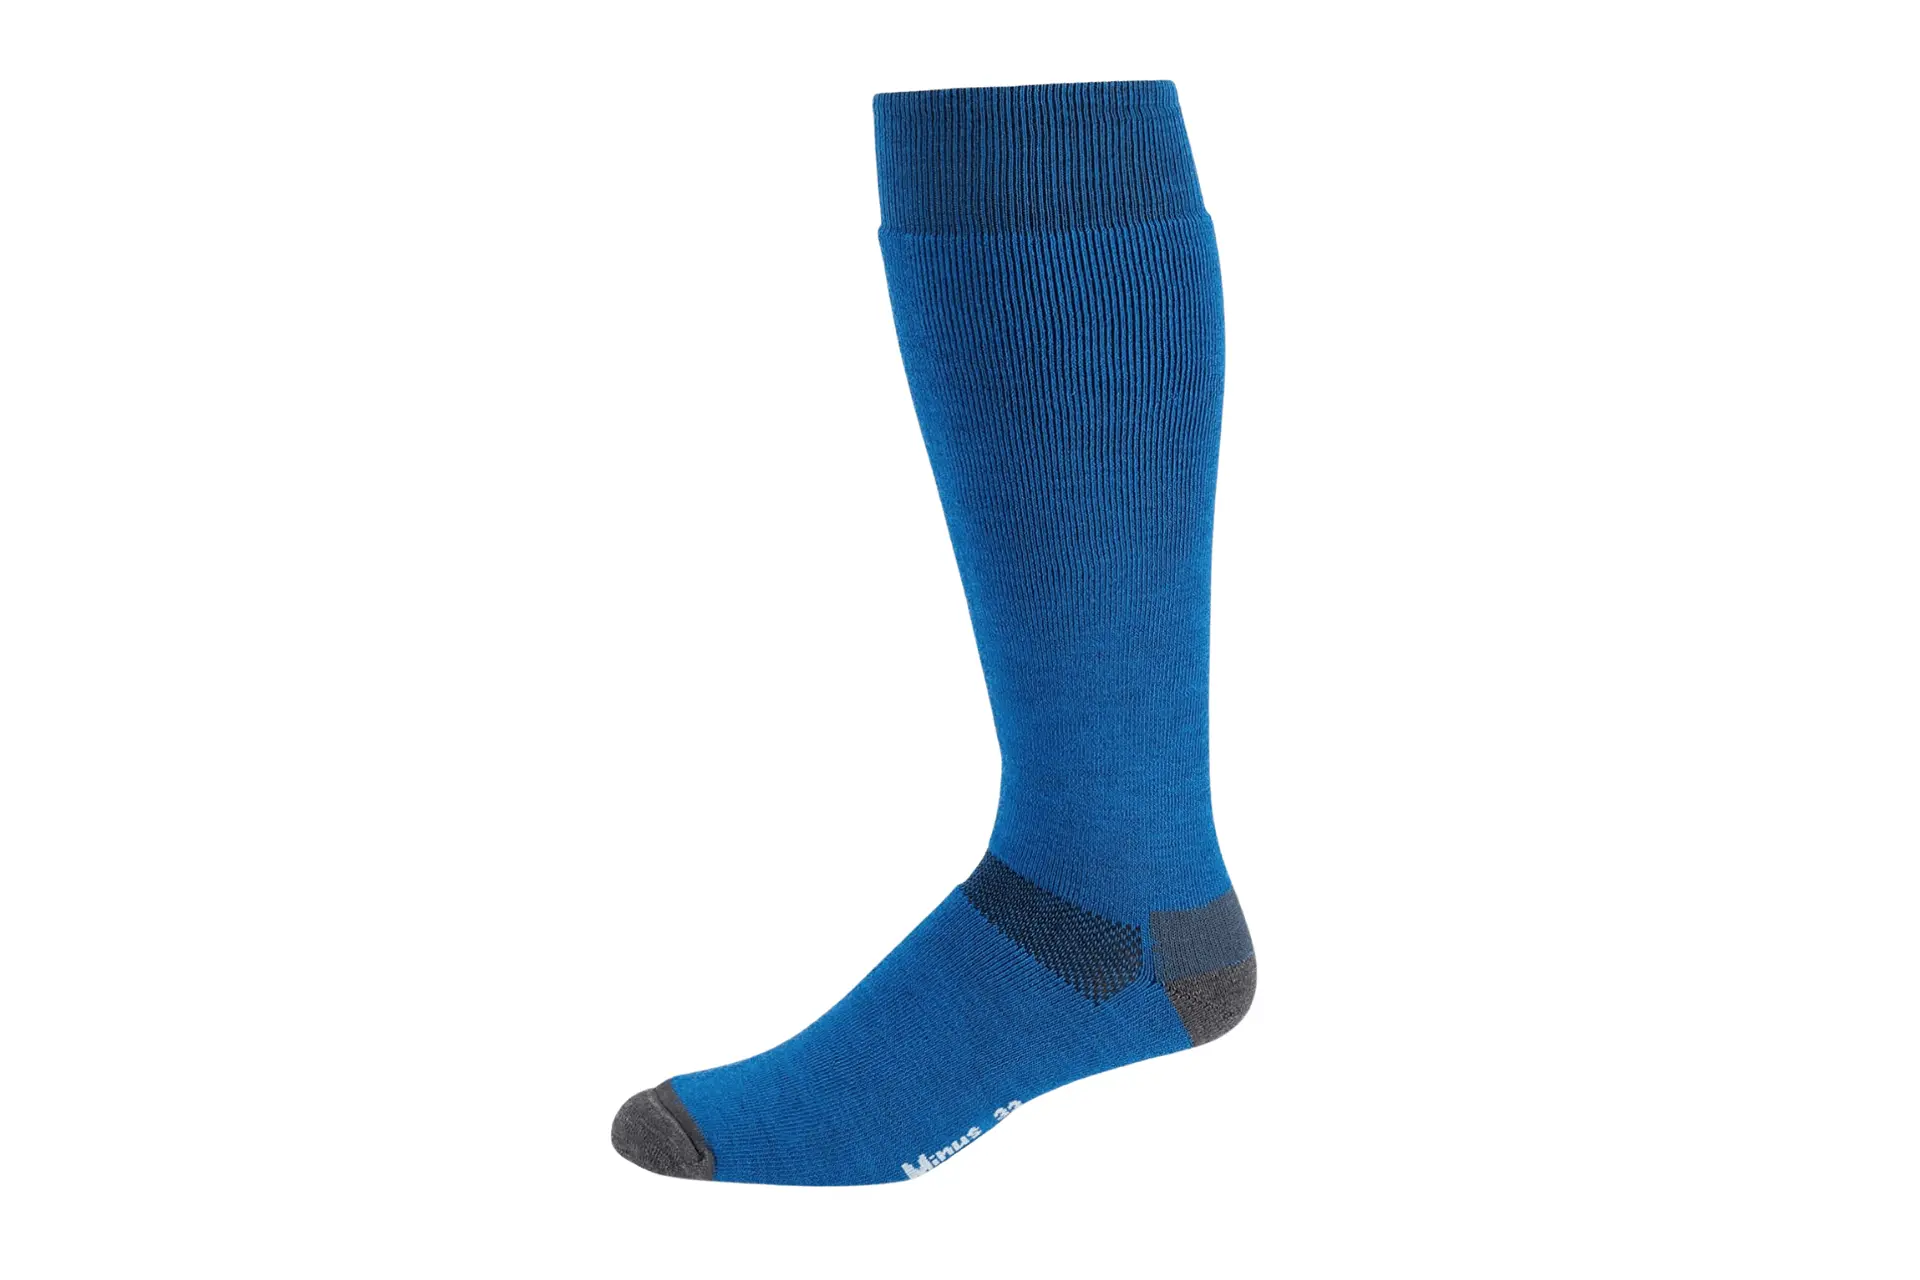 Minus33 Merino Wool Socks